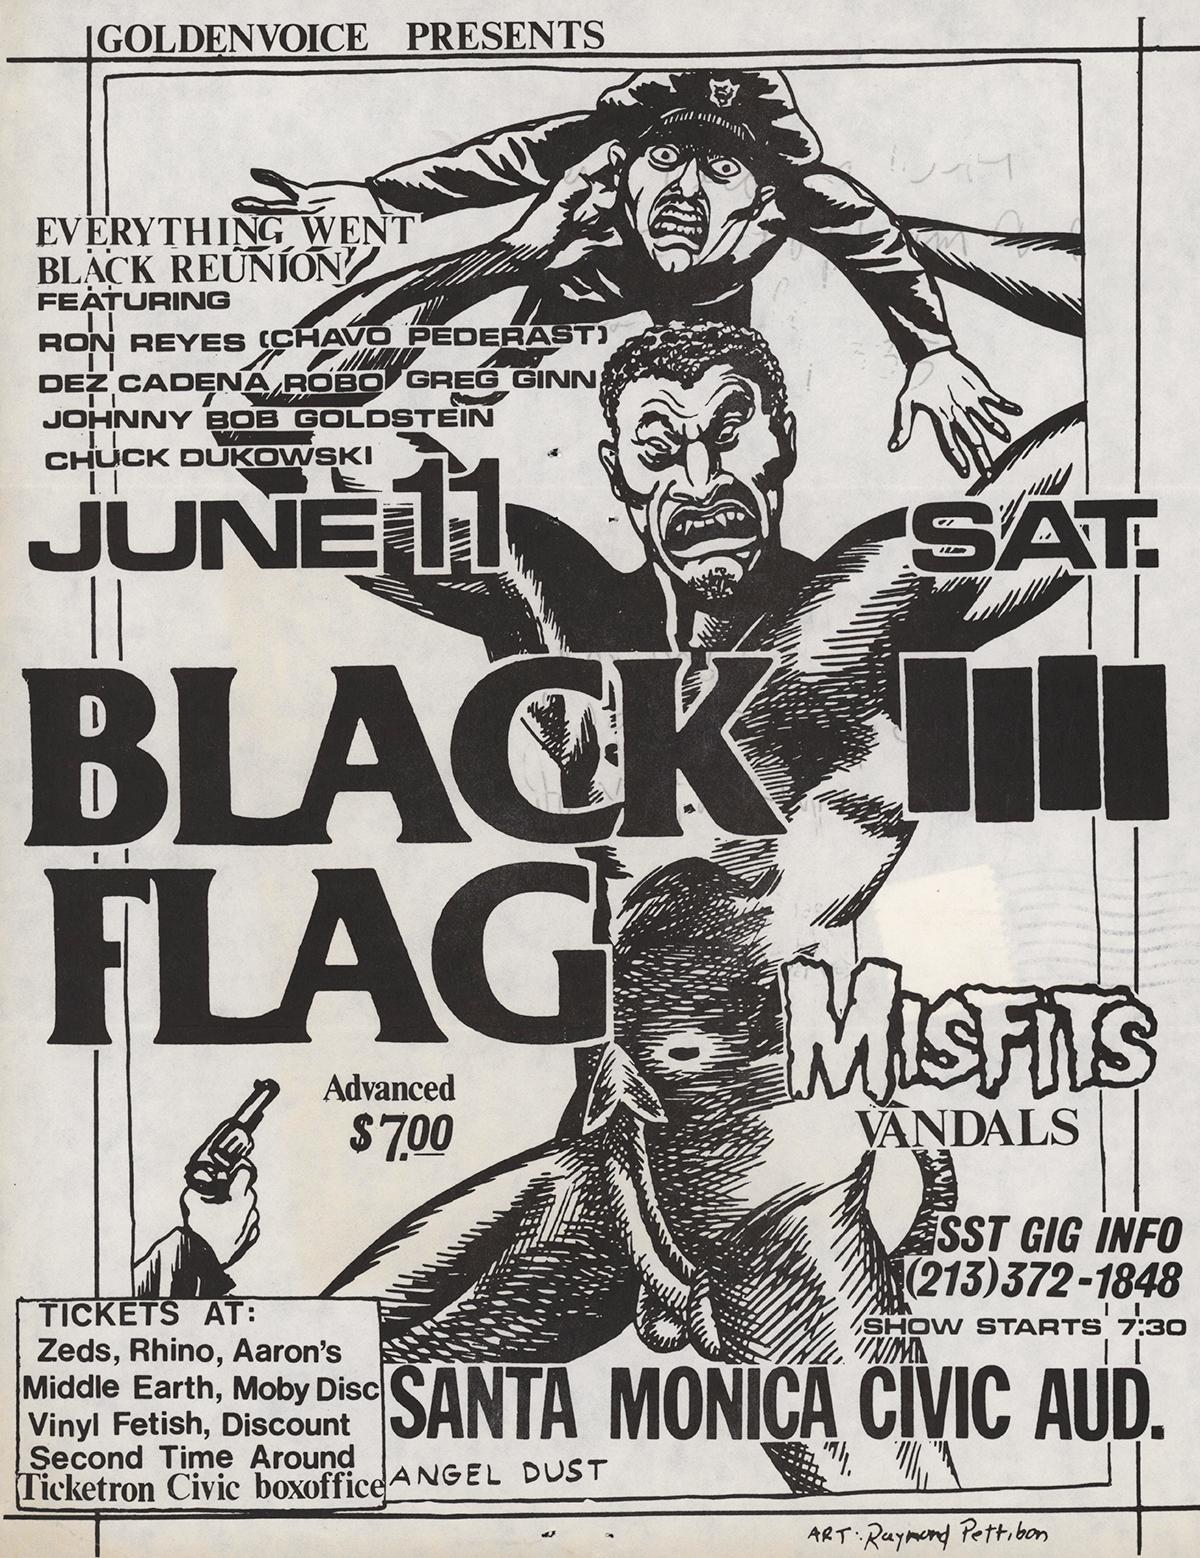 Raymond Pettibon: Seltener früher Black Flag Punk-Flyer: 
Black Flag Santa Monica Civic Auditorium, 11. Juni 1983. Santa Monica, CA.   Flyer/Handzettel für ein Konzert von Black Flag, Misfits, Vandals mit einem Kunstwerk von Pettibon. Rückseitig mit